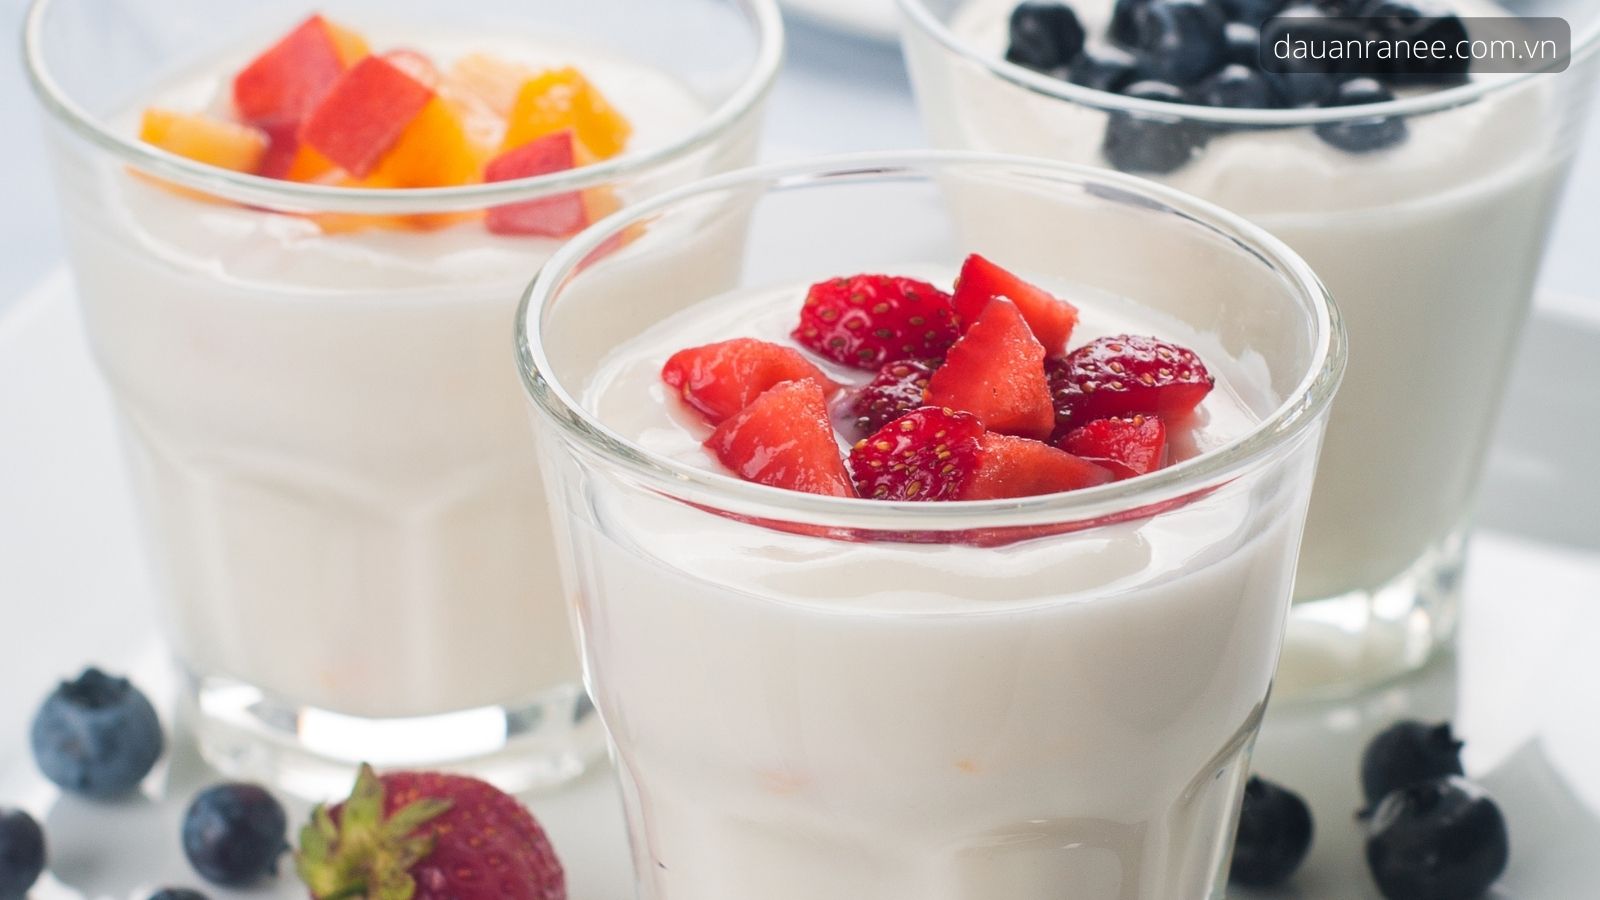 10 Cách Làm Sữa Chua Ngon Mịn Dẻo Vô Cùng Đơn Giản Tại Nhà